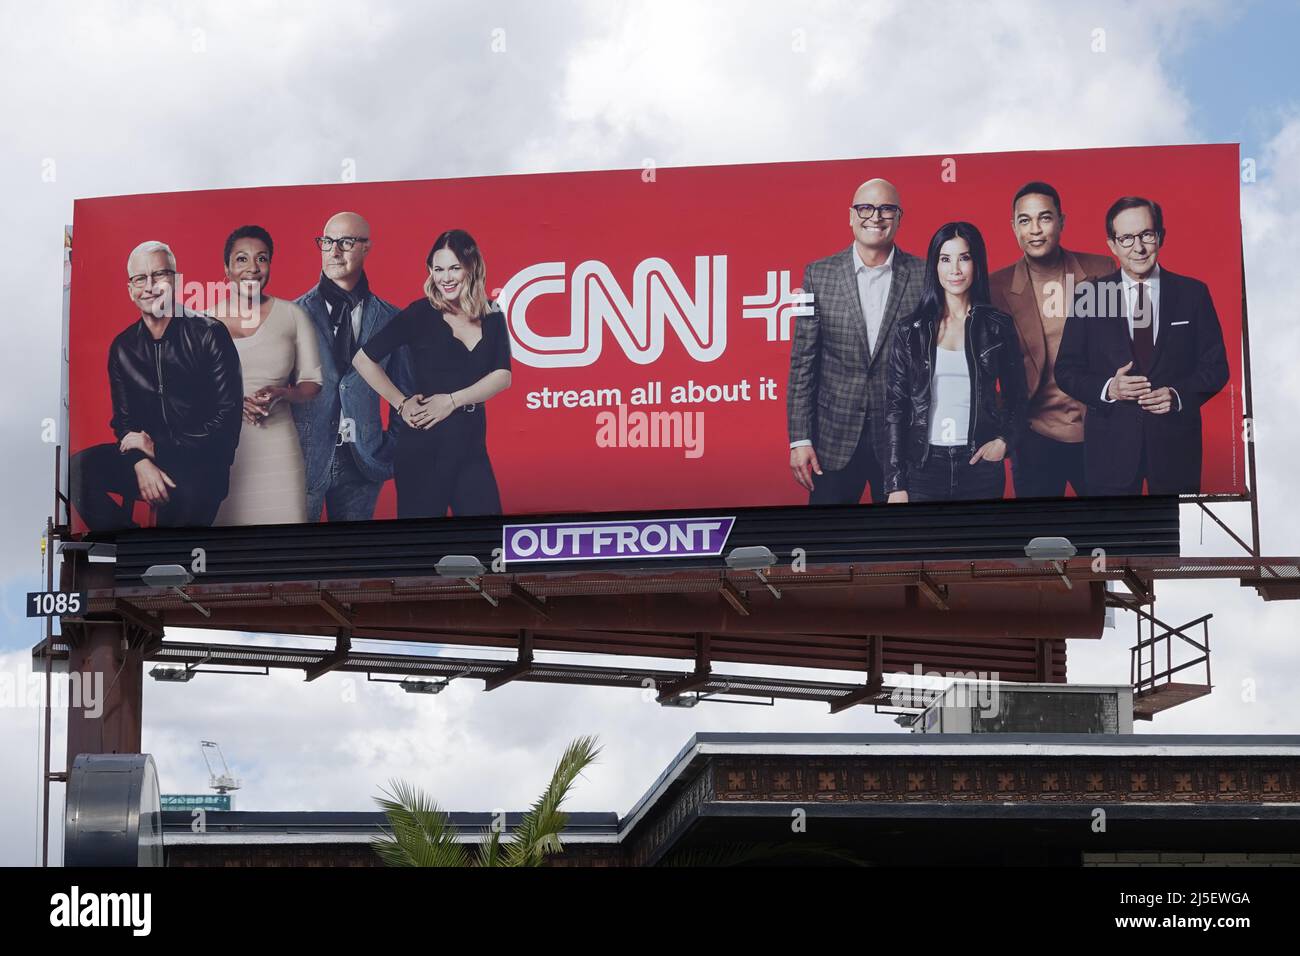 Los Angeles, CA / USA - 22. April 2022: Persönlichkeiten, die auf dem Videostreaming-Service CNN+ zu sehen sind, werden auf einer Plakatwand über einem Gebäude angezeigt. Stockfoto